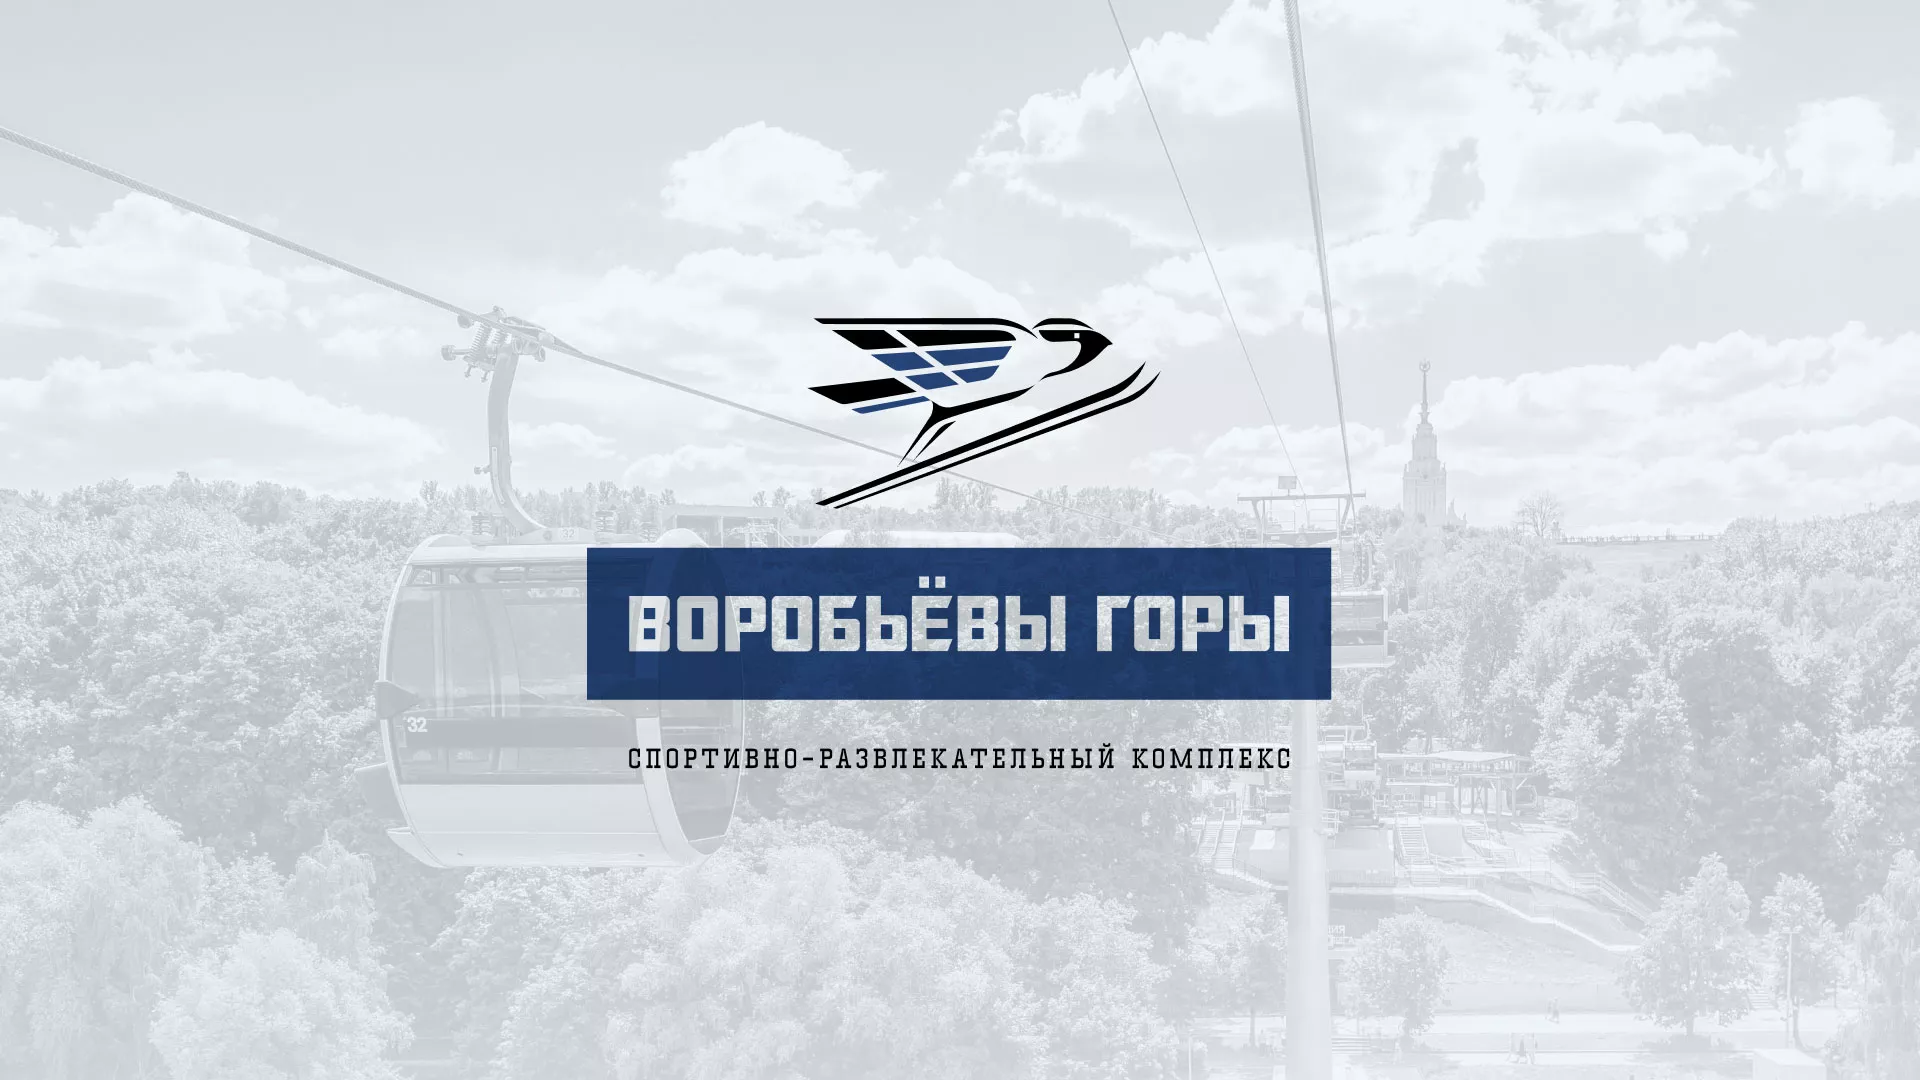 Разработка сайта в Новопавловске для спортивно-развлекательного комплекса «Воробьёвы горы»